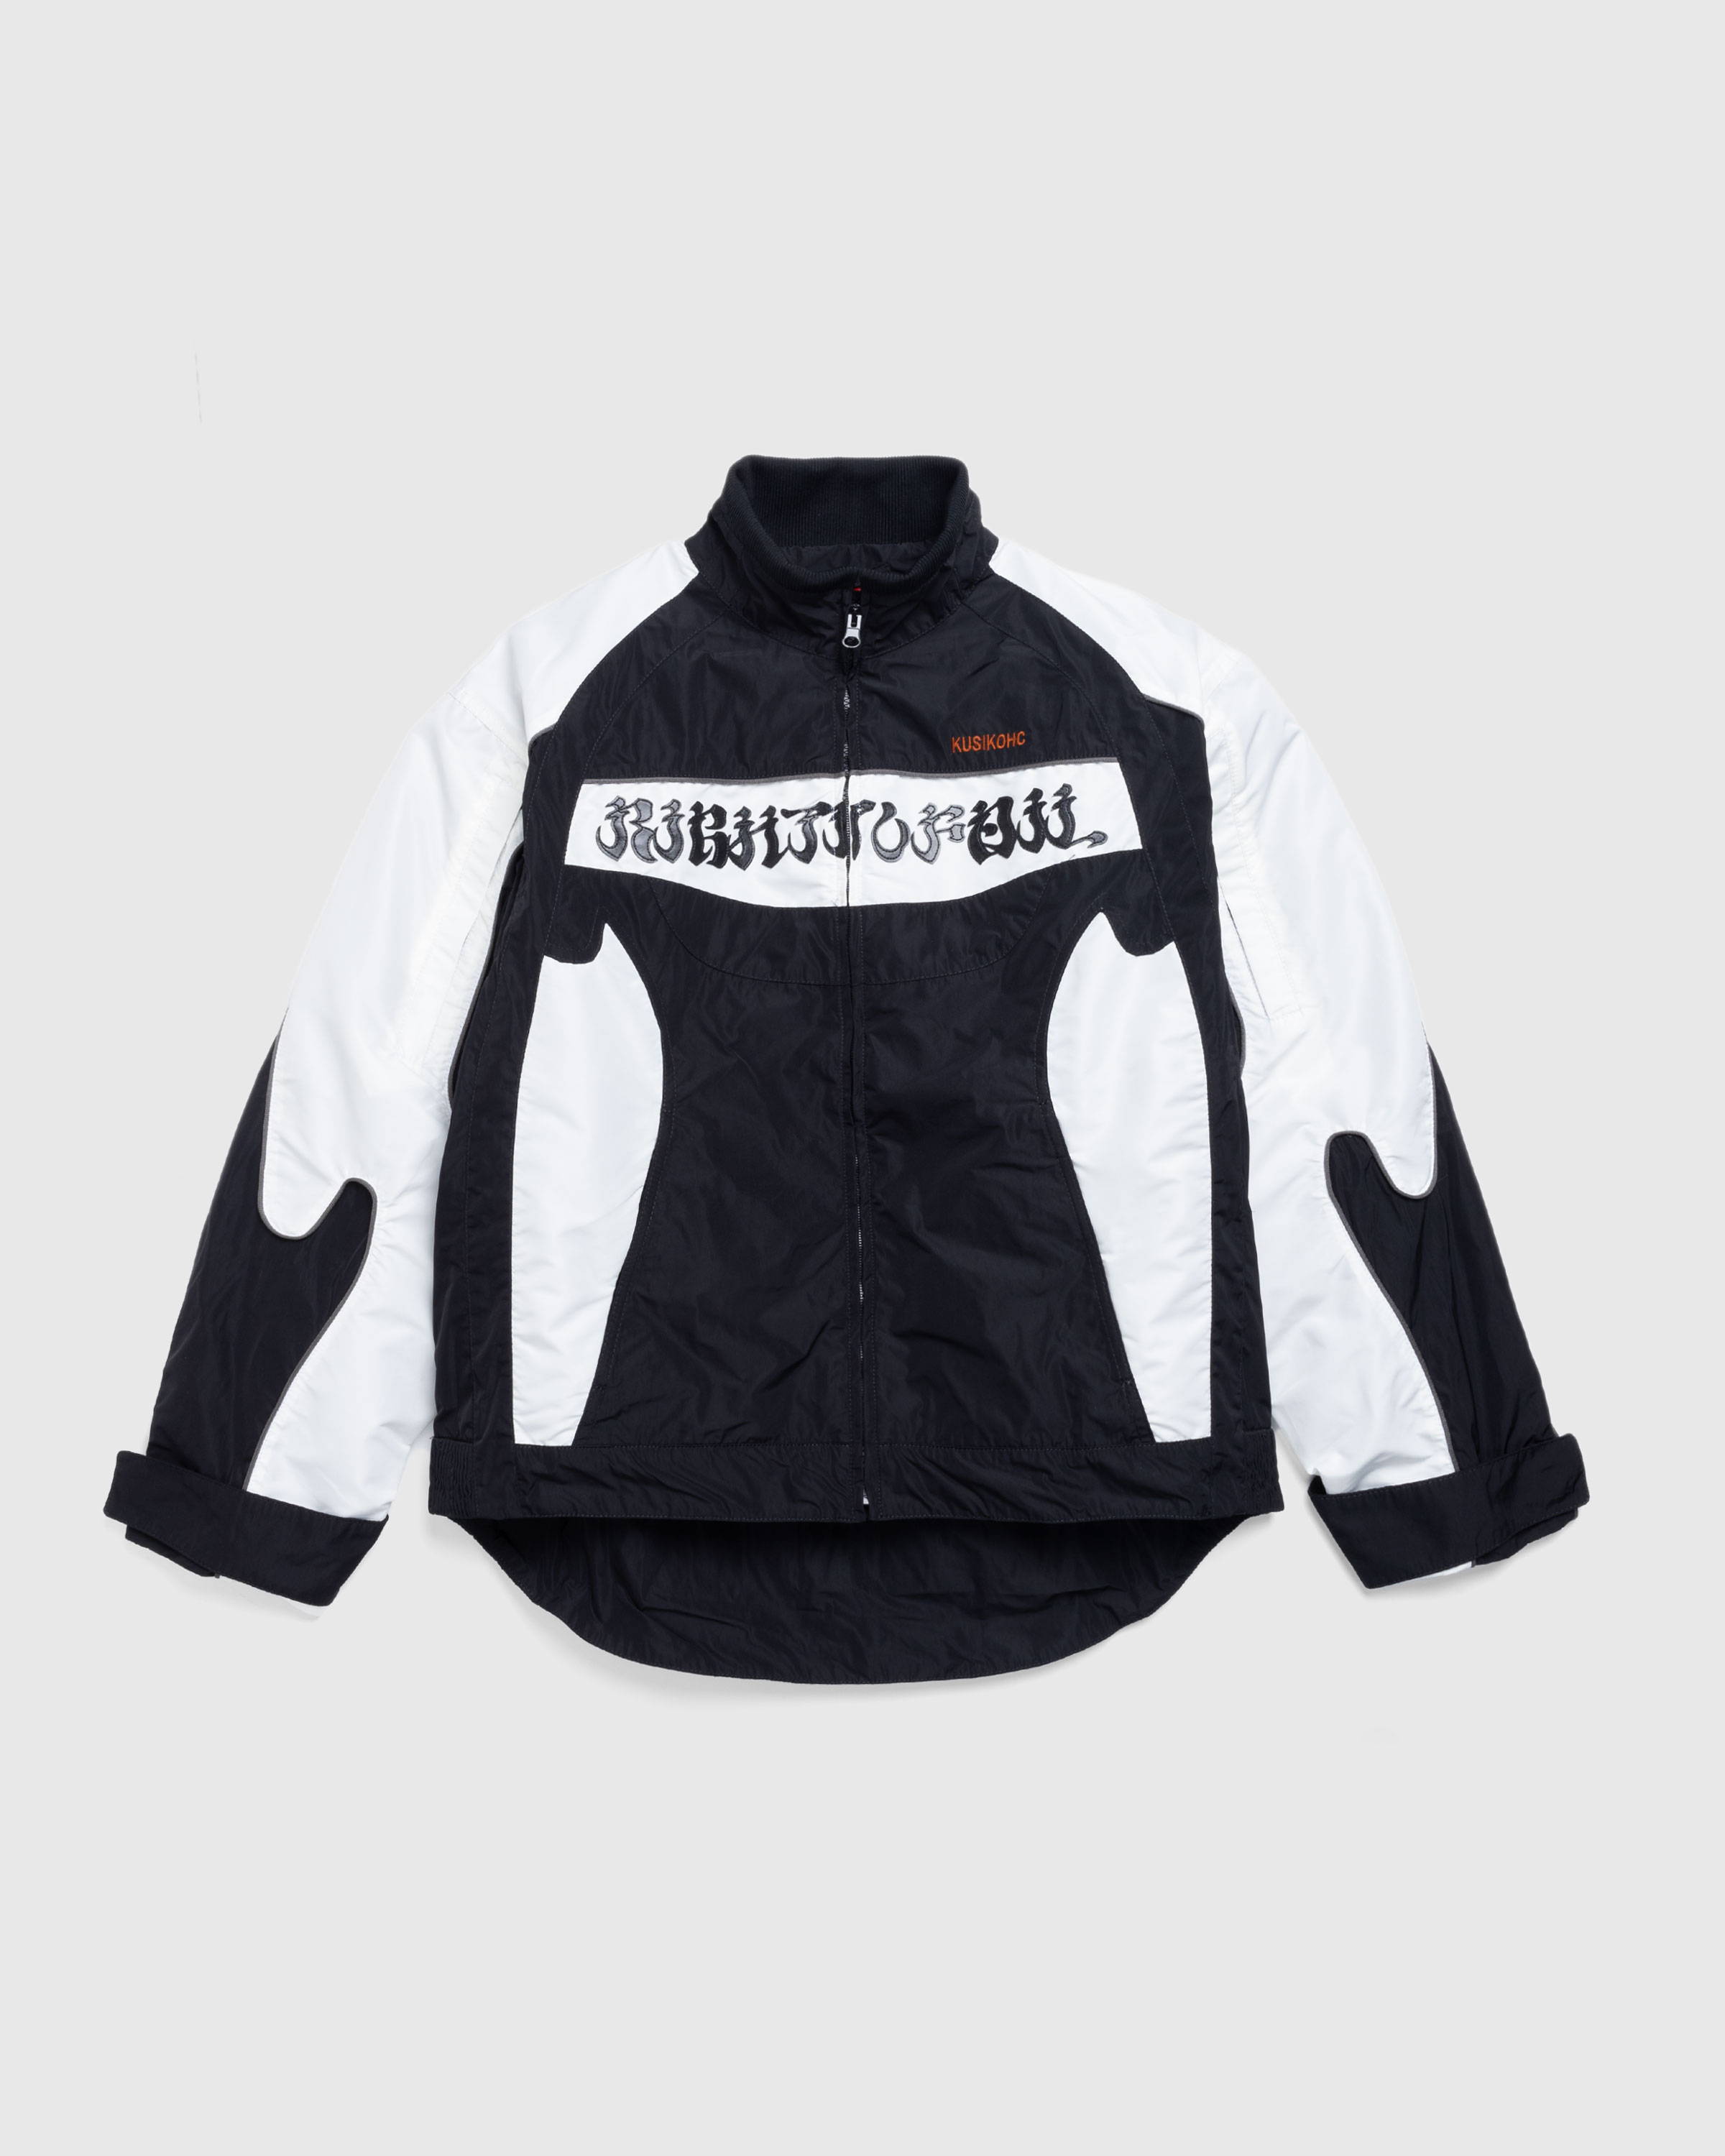 KUSIKOHC – Rider Jacket Black/Cannoli Cream - Outerwear - Black - Image 1